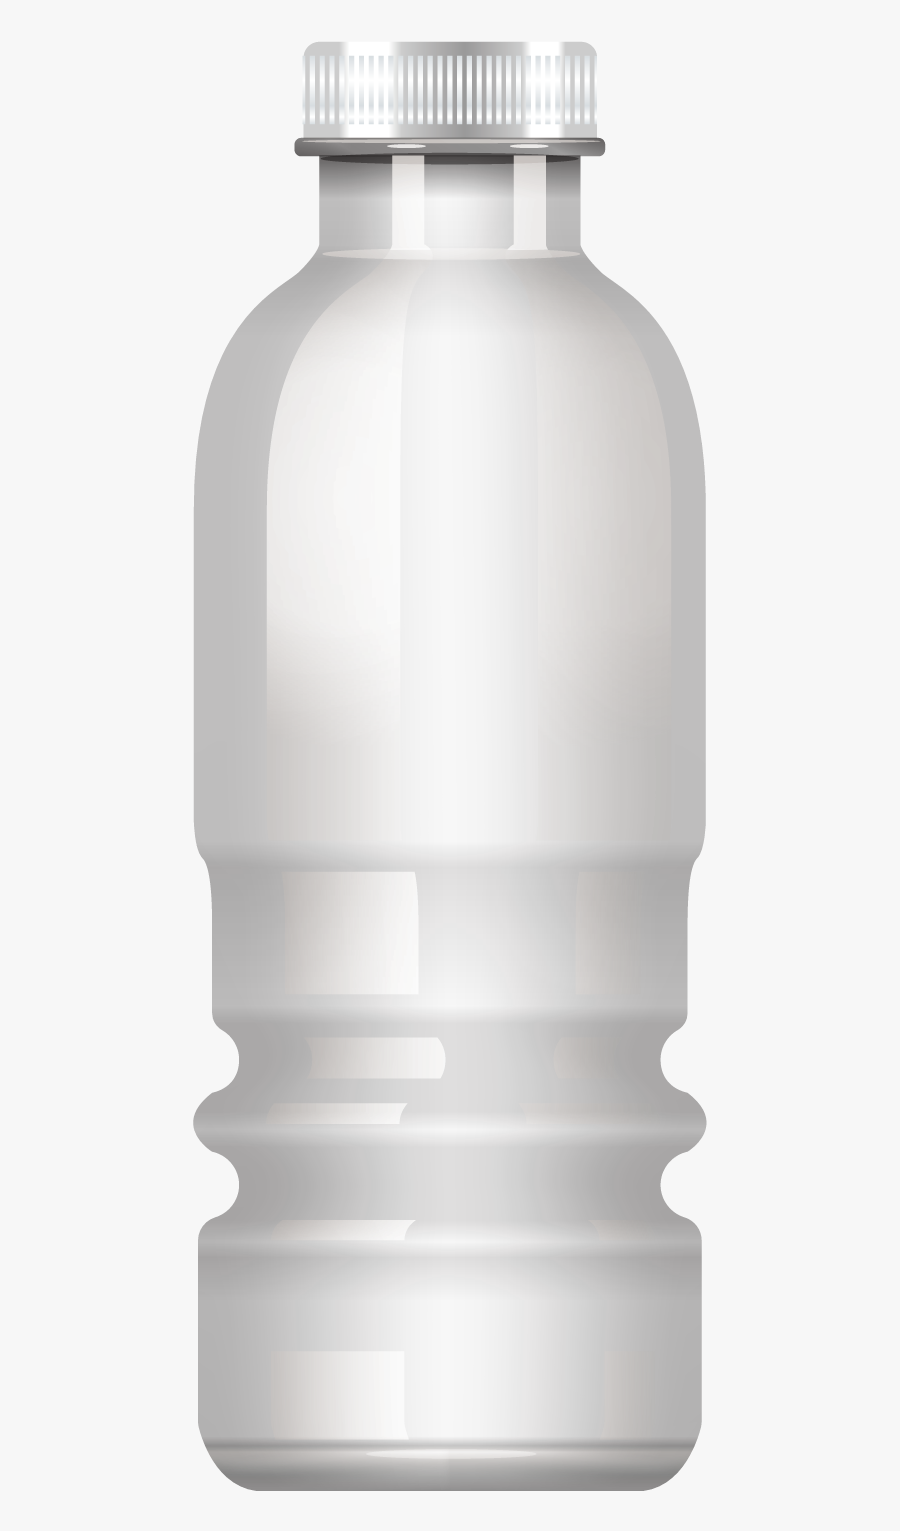 Bottle Clipart S Plastic Bottle Water Bottle Png - Mobile Phone Case, Transparent Clipart